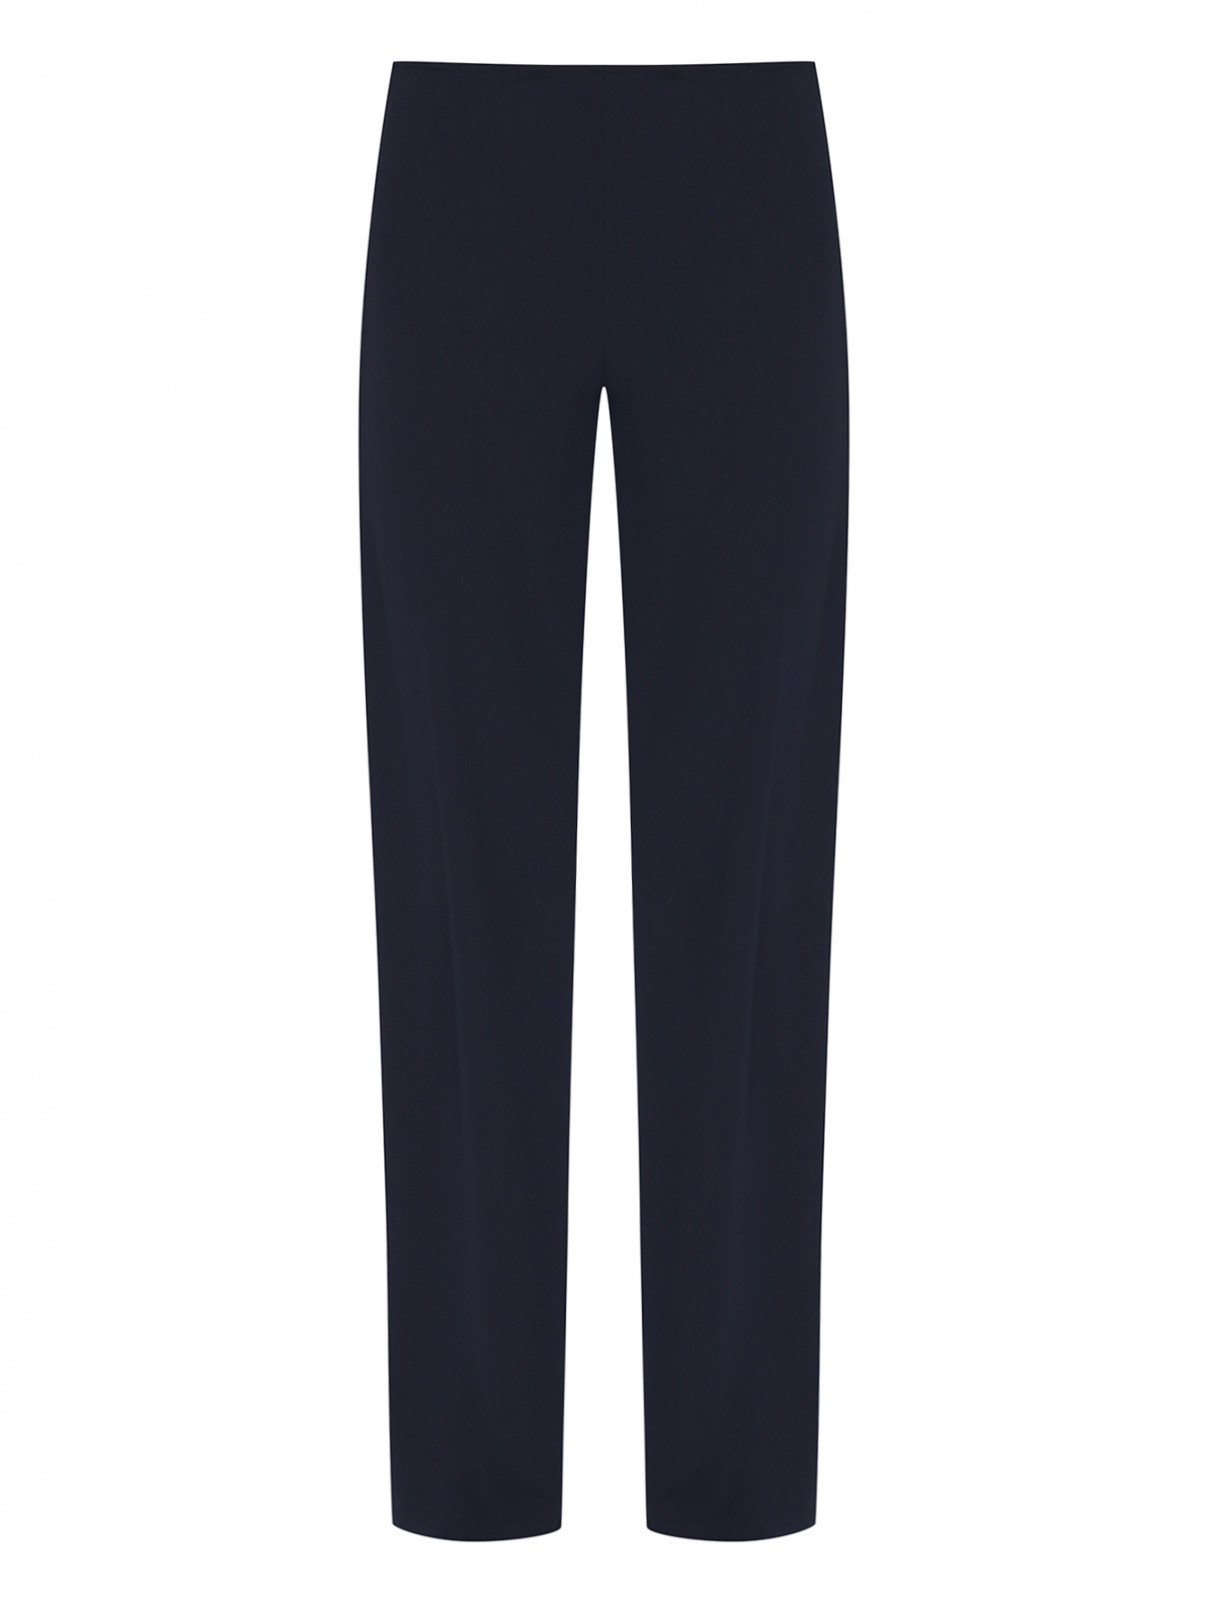 Однотонные брюки на молнии Luisa Spagnoli  –  Общий вид  – Цвет:  Синий